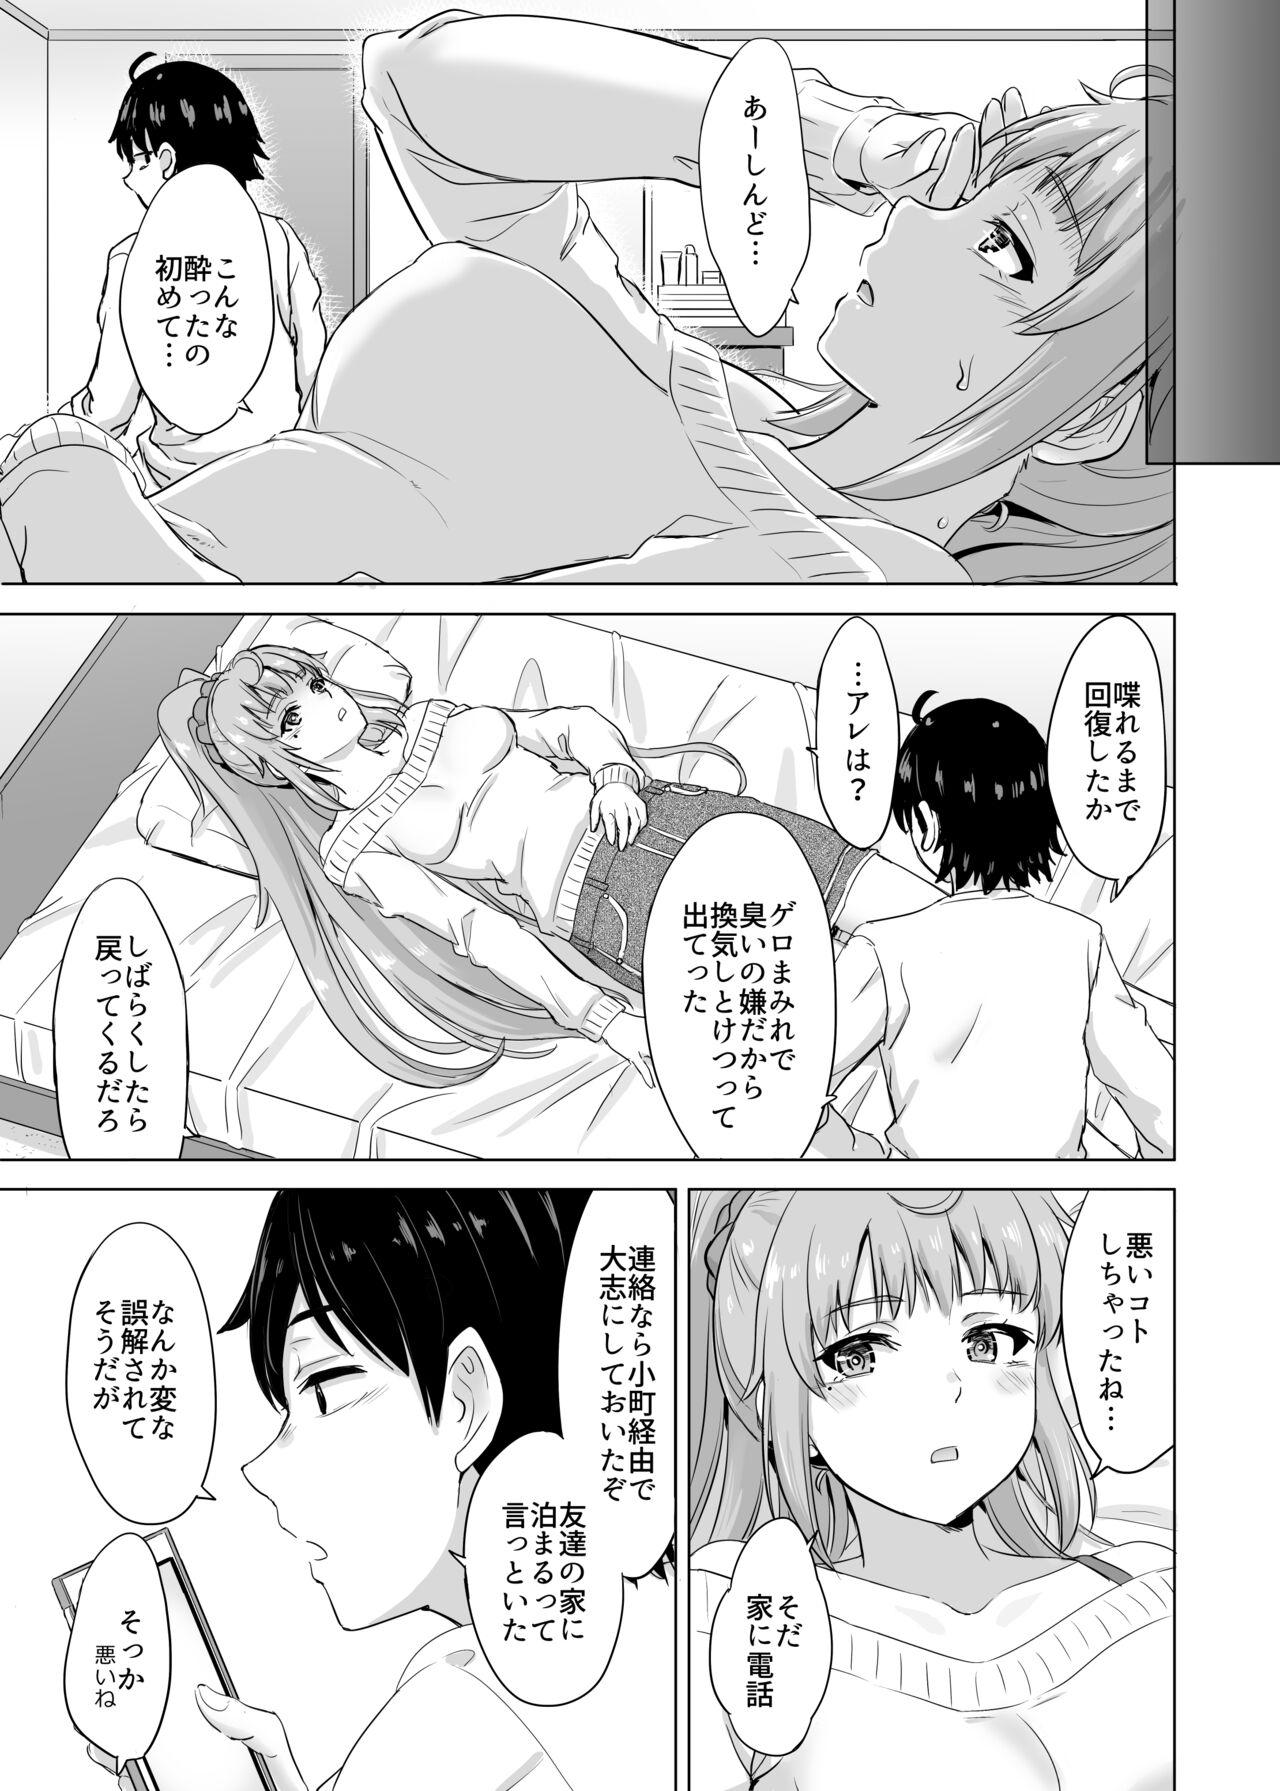 Office Sex Ashi-san Saki Saki Manga - Yahari ore no seishun love come wa machigatteiru Gay Public - Picture 3